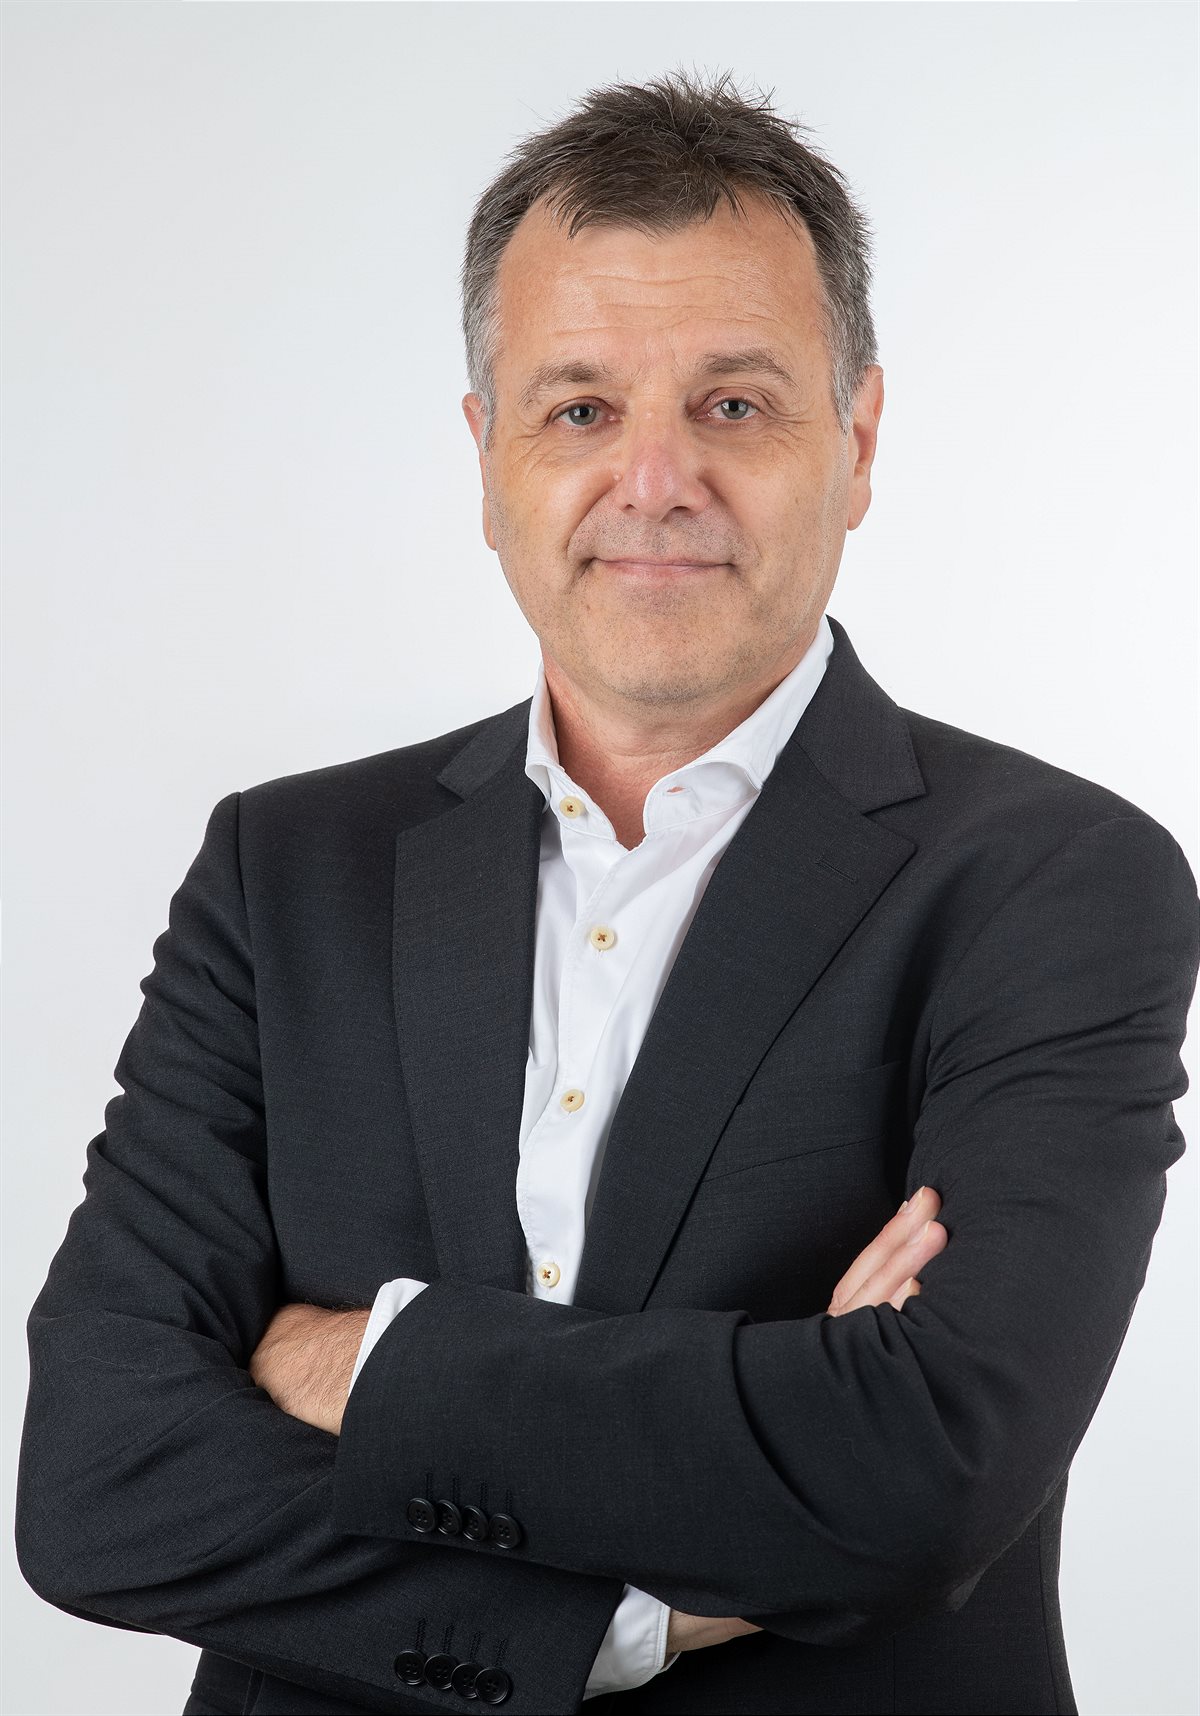 Paul van Oorschot ist neuer Vorsitzender der BNP Paribas Gruppe in Österreich